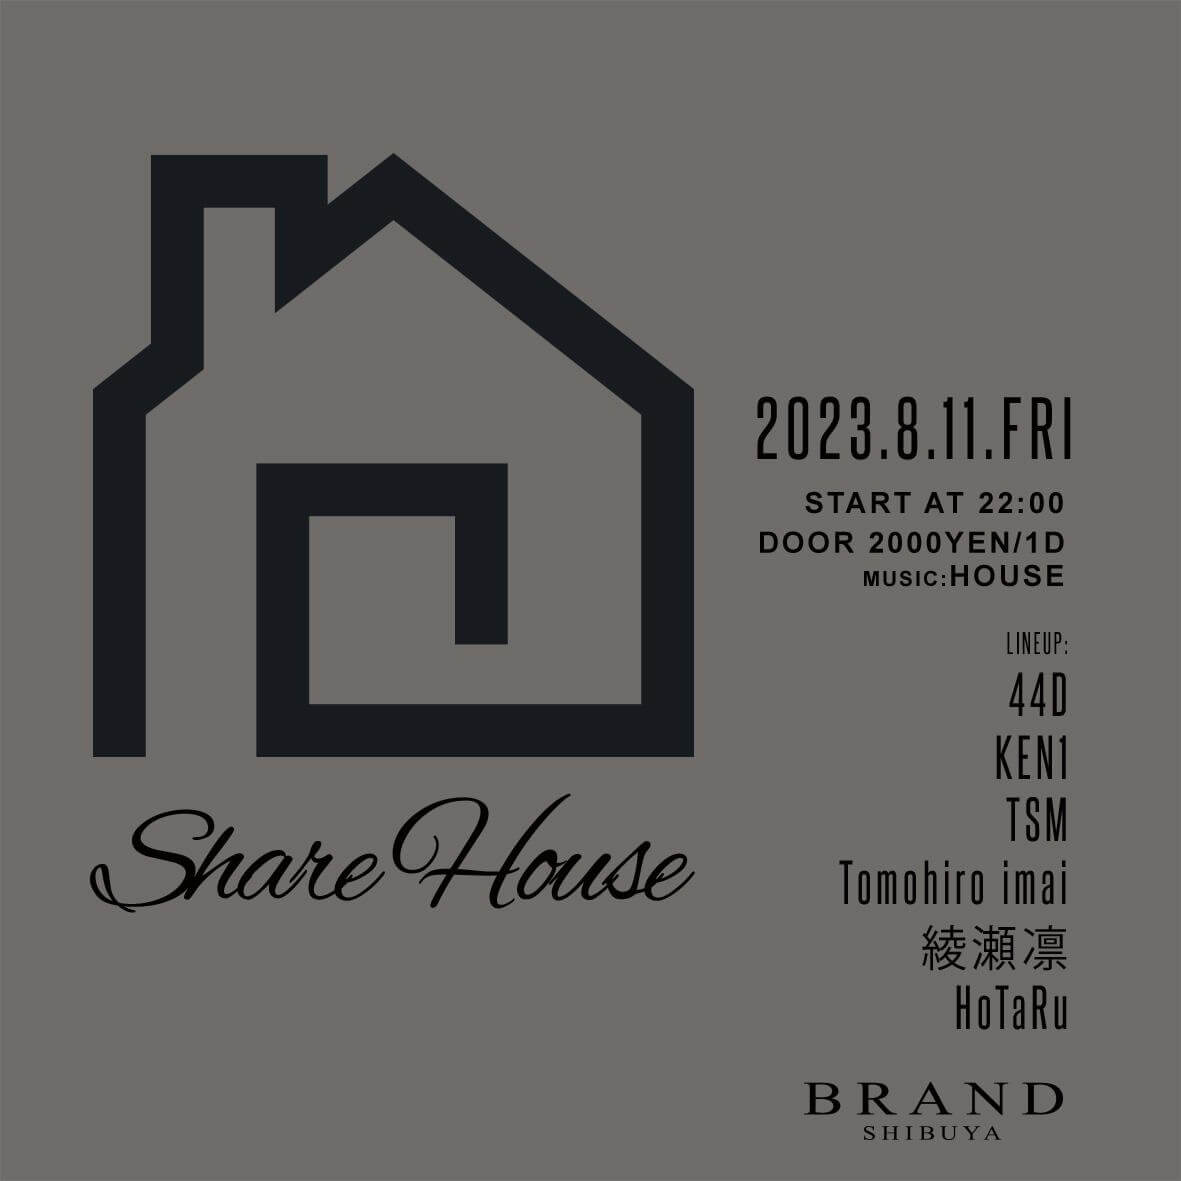 Share House 2023年08月11日（金曜日）に渋谷 クラブのBRAND SHIBUYAで開催されるHOUSEイベント